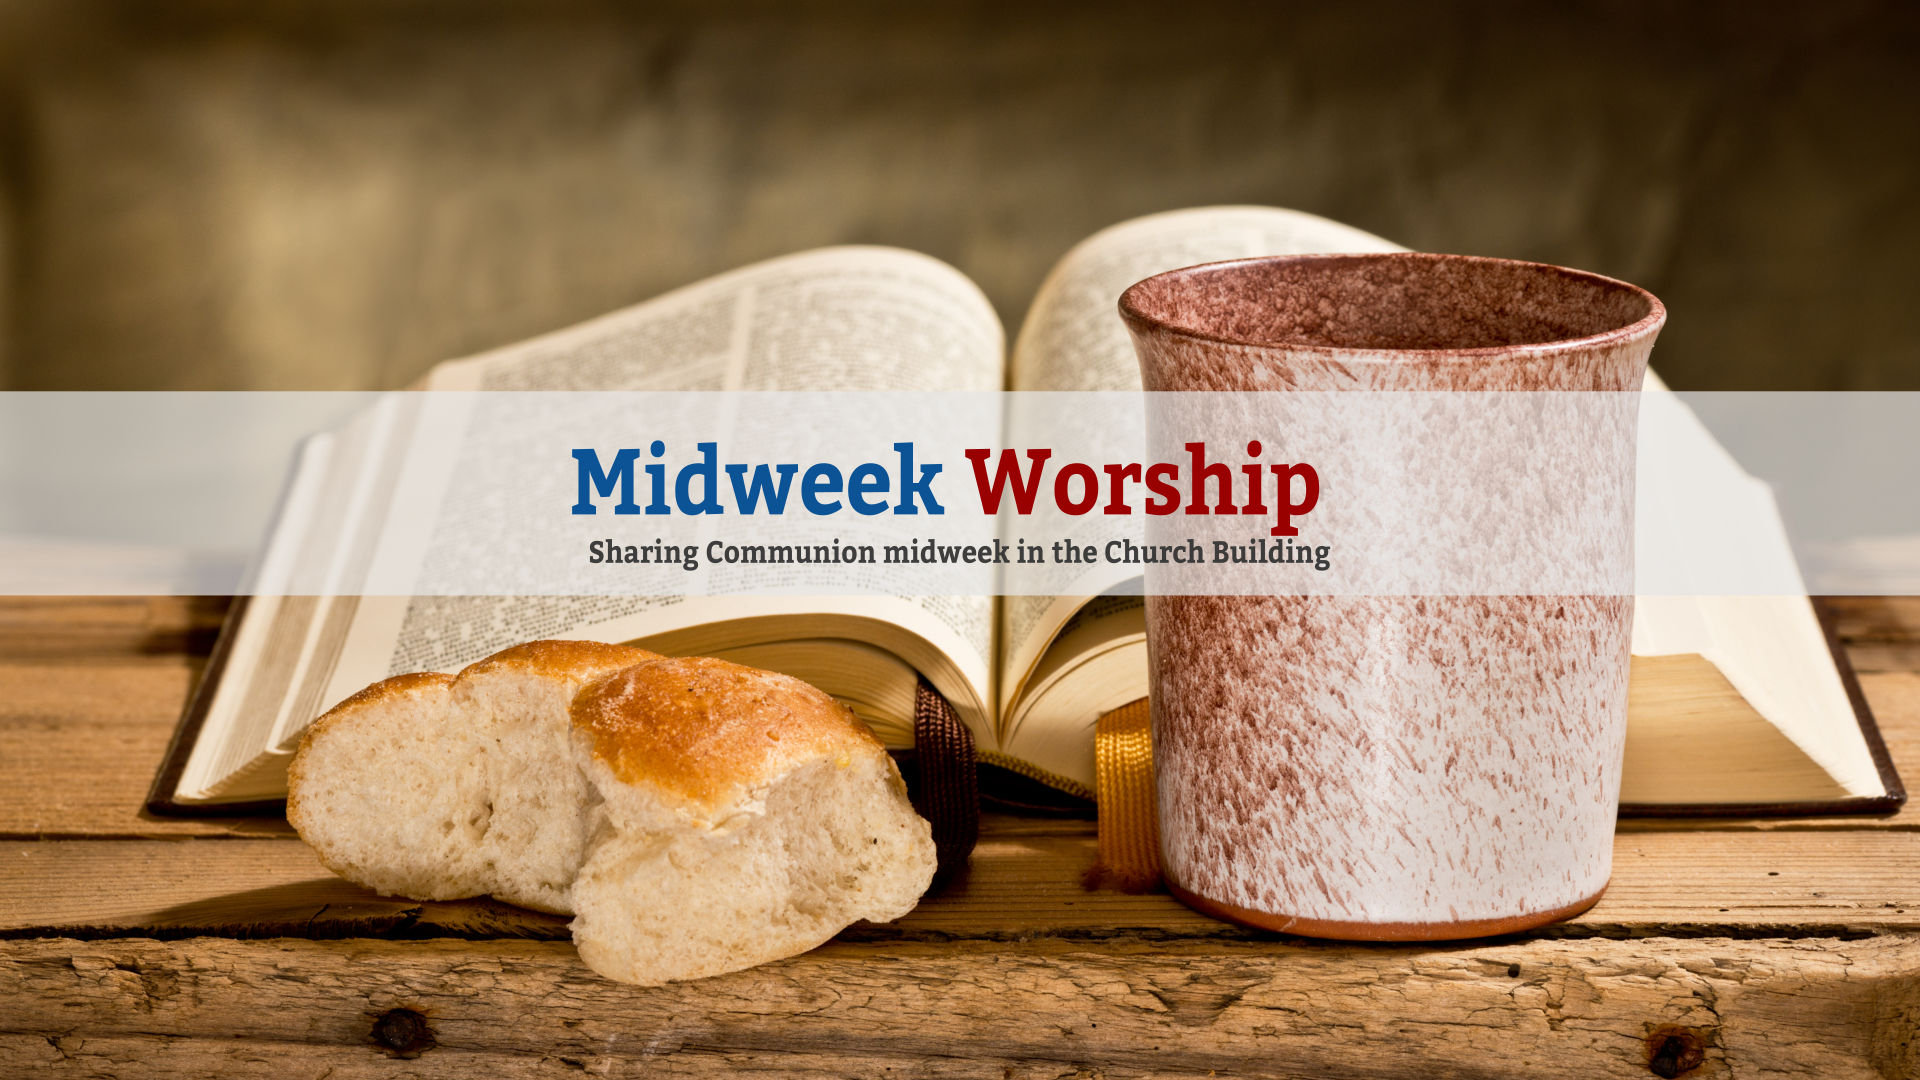 Midweek worship